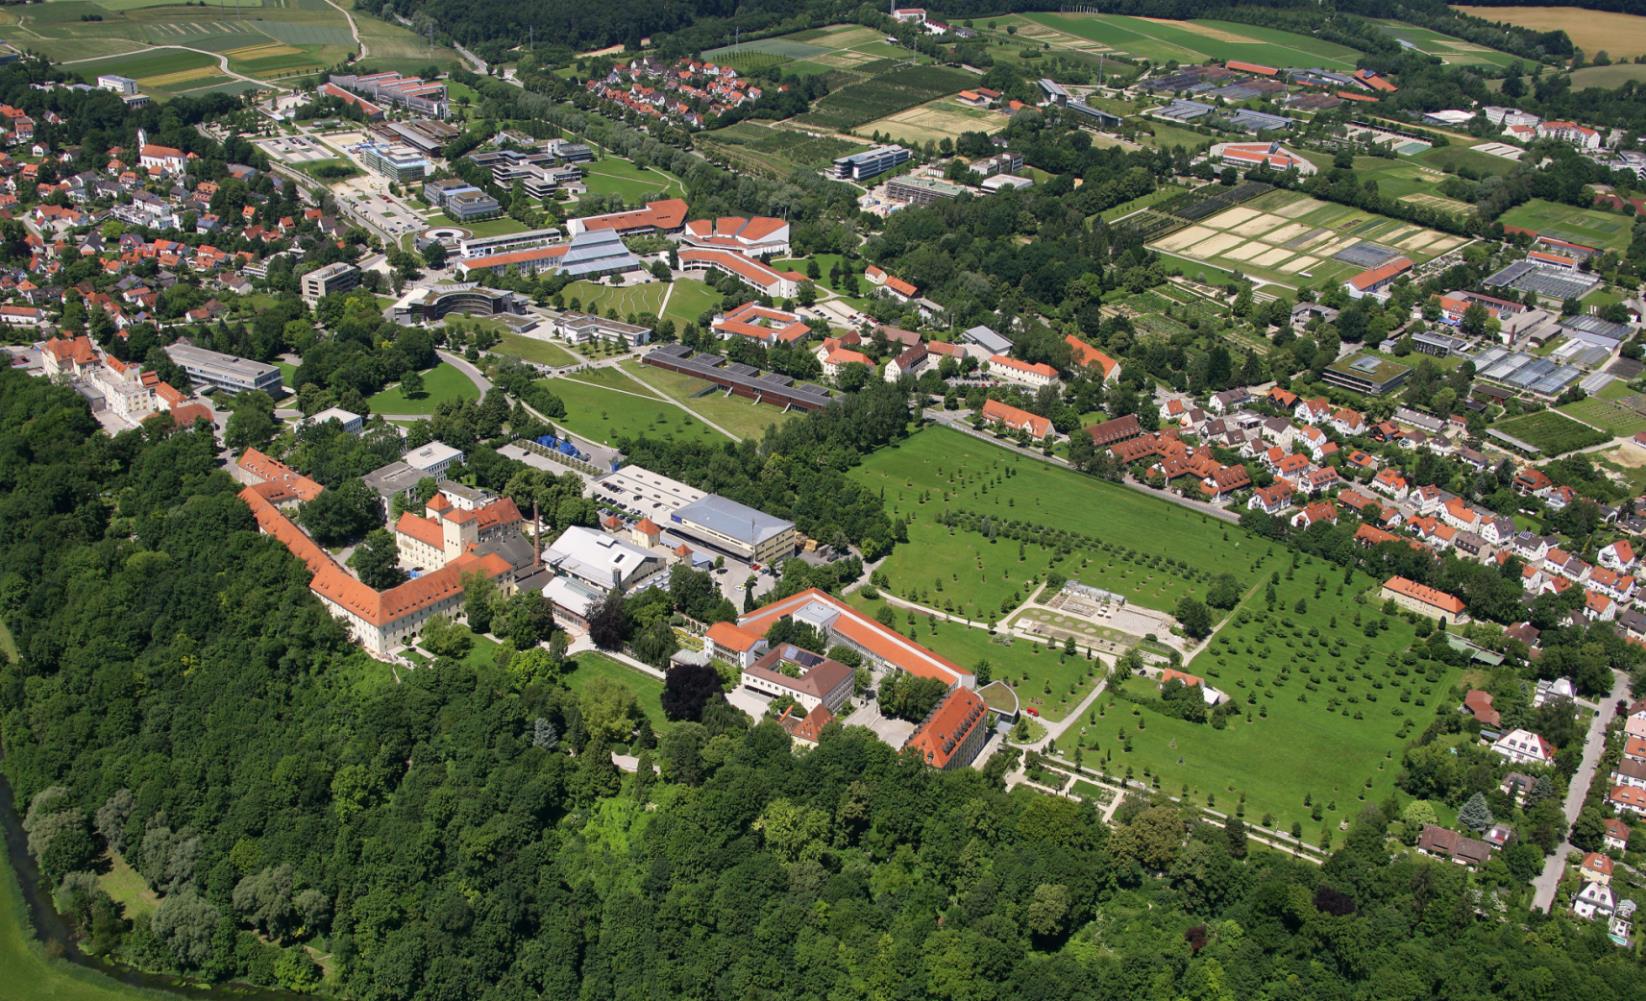 Gesamt Weihenstephan umfasst eine Fläche von 284 ha. Hochschule: 640 Mitarbeiter und Professoren TU München, Abteilung Weihenstephan: 1.